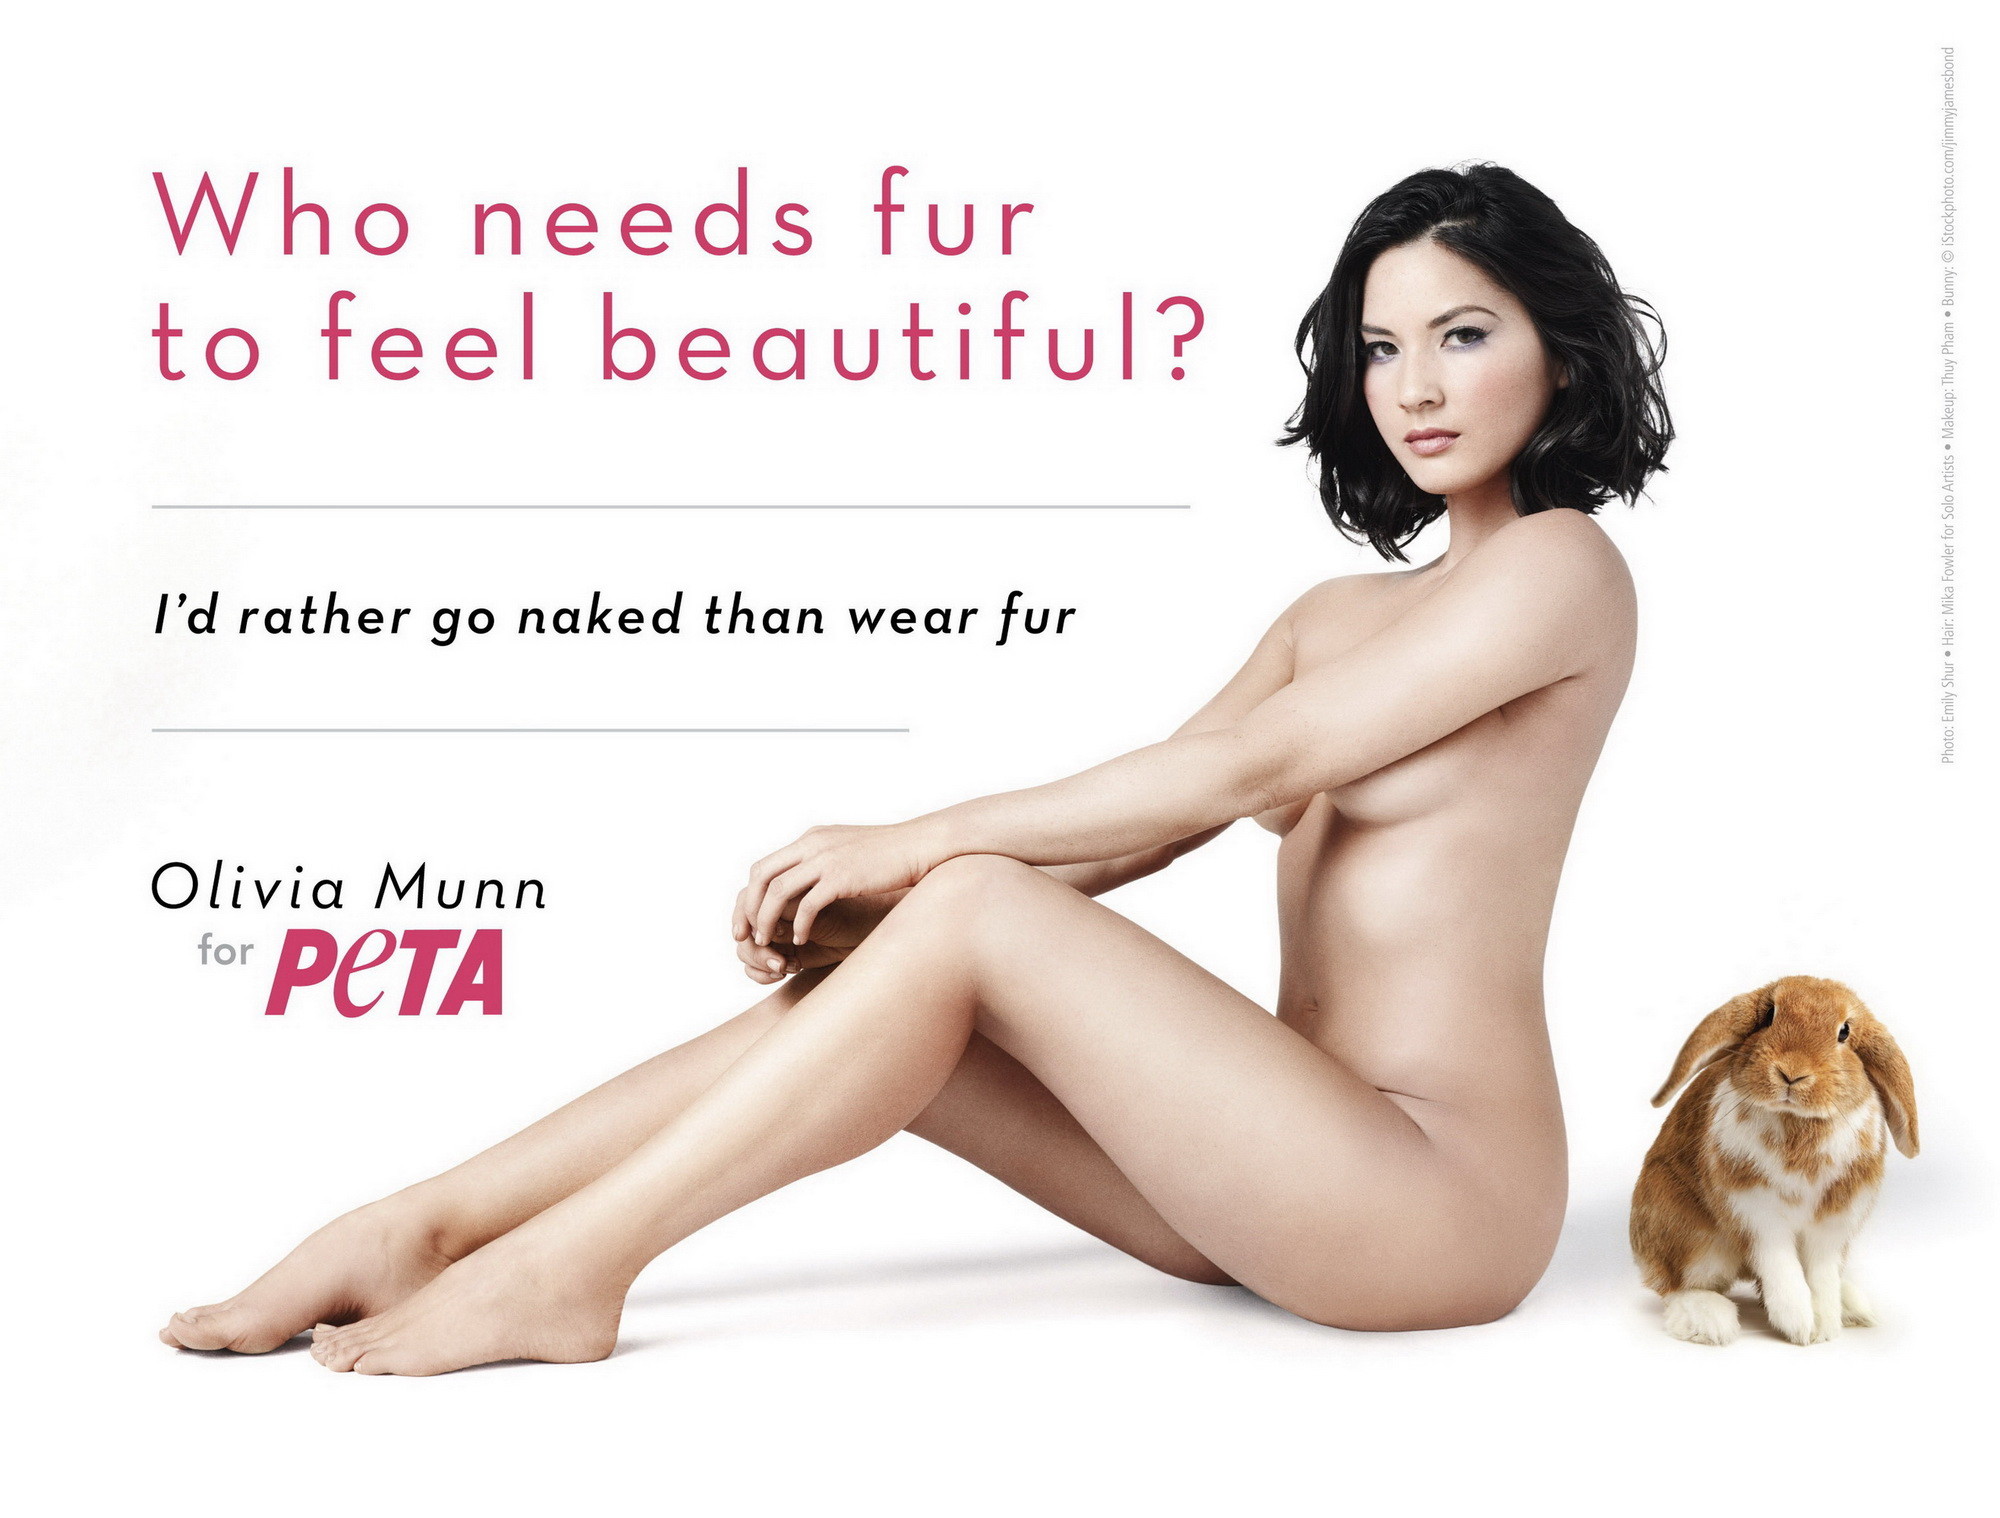 Olivia munn totalmente desnuda pero escondida para la nueva campaña publicitaria de peta
 #75276543